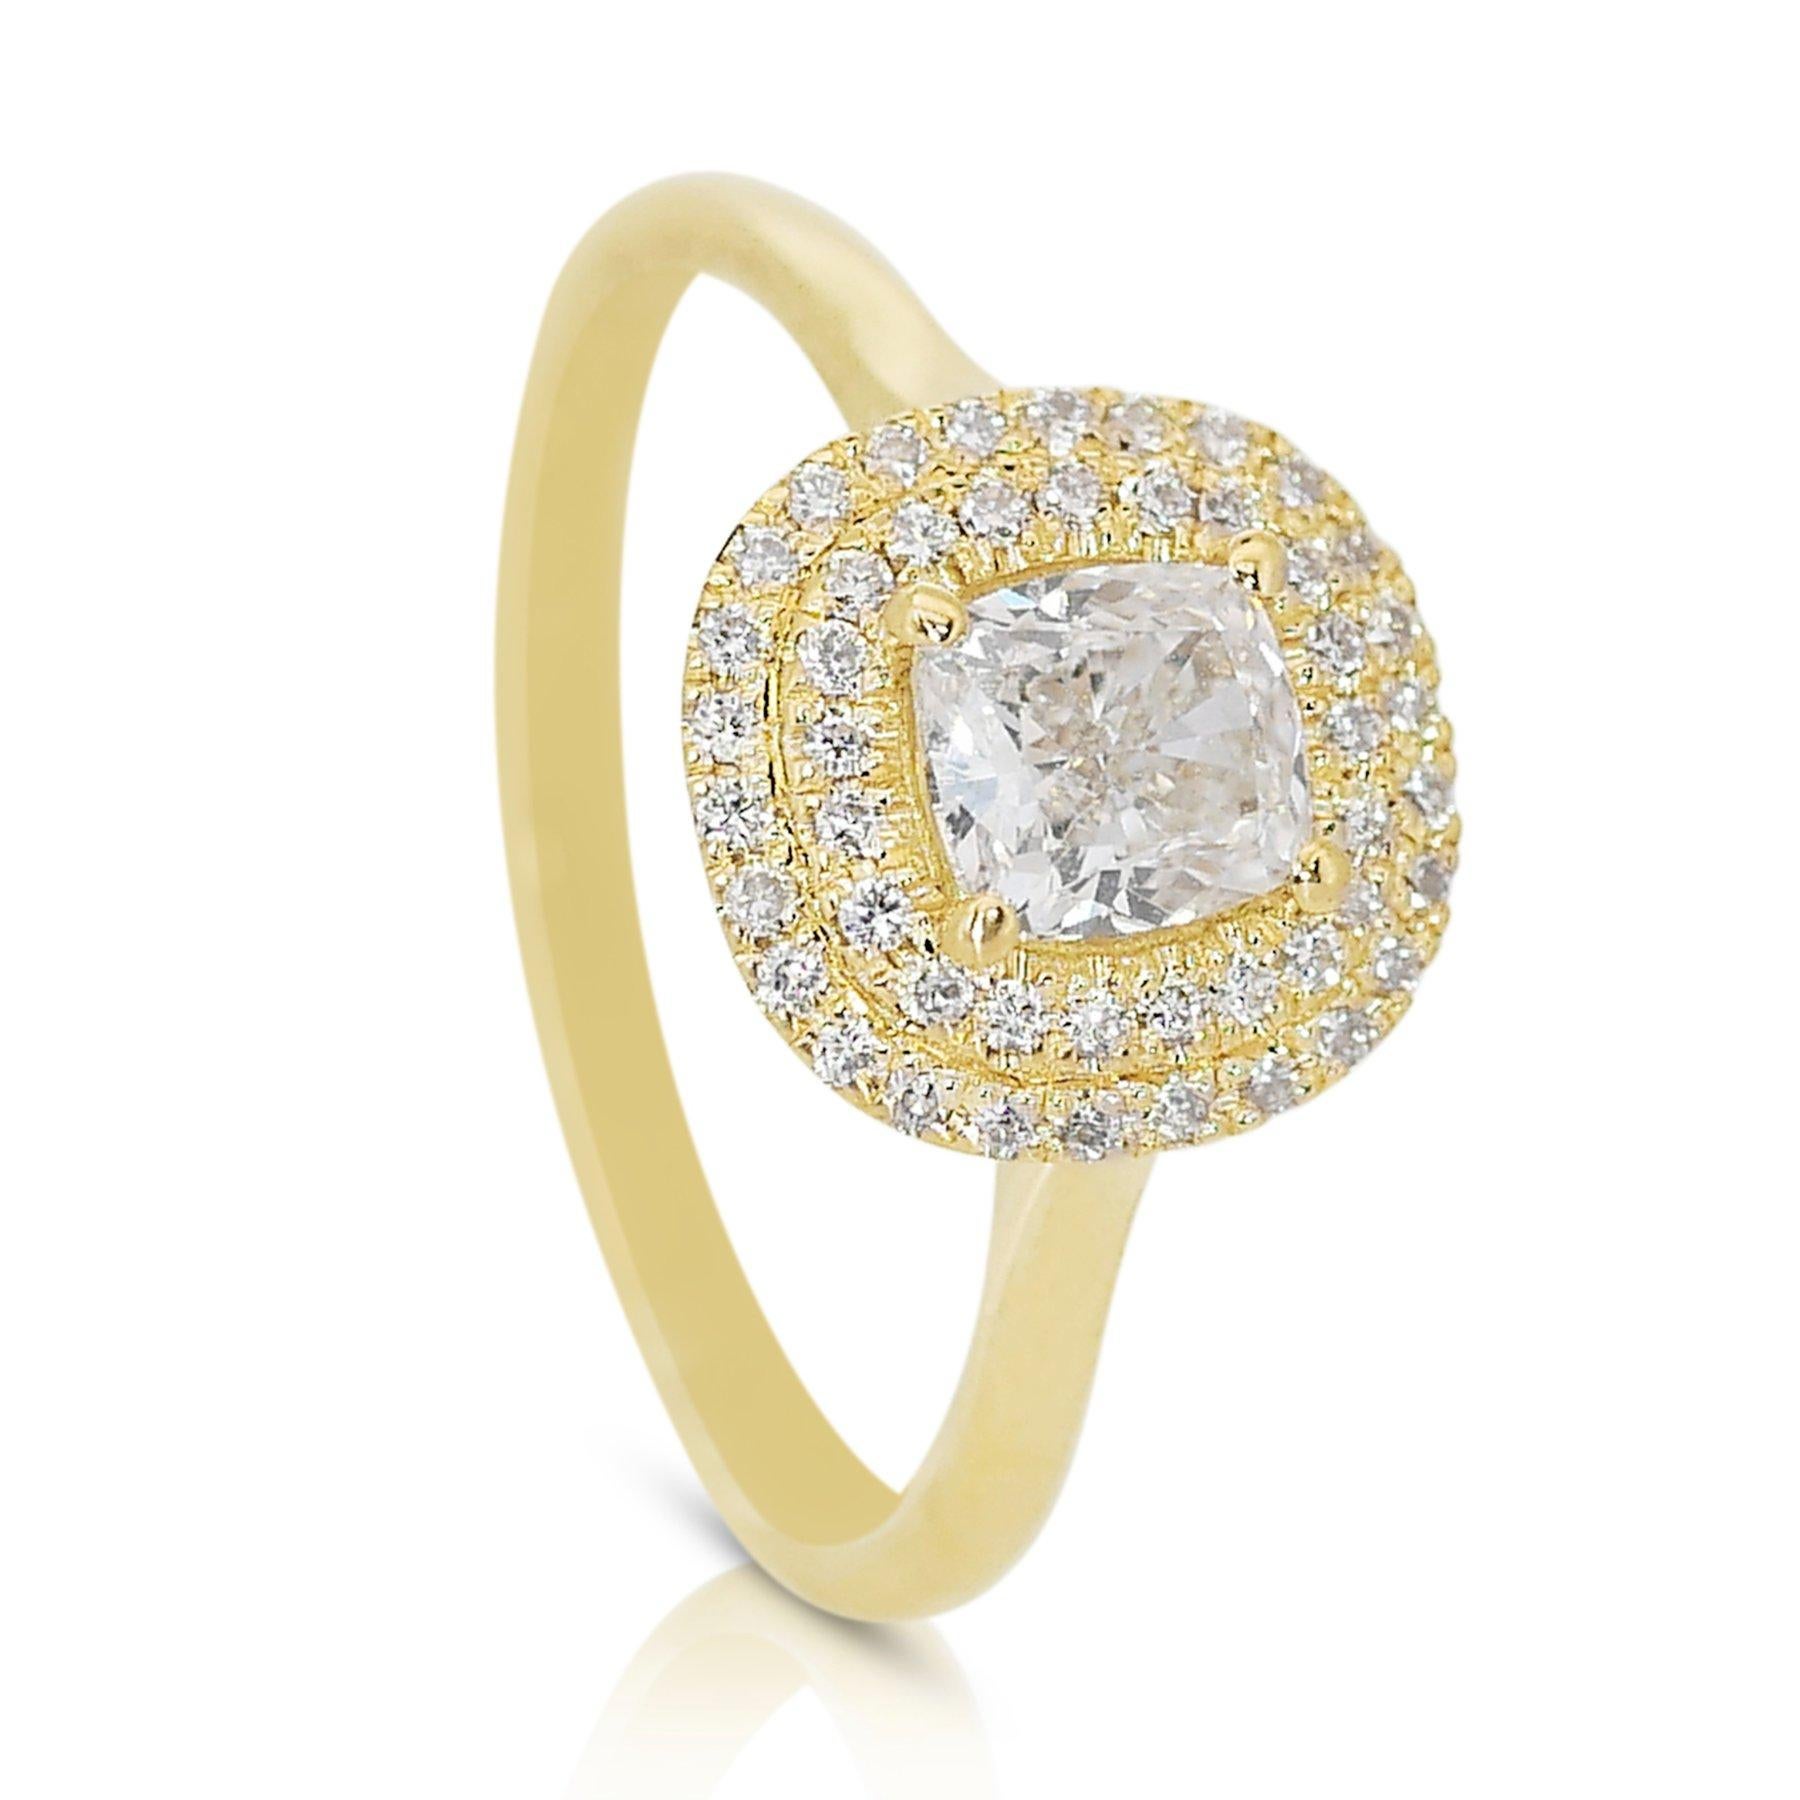 Magnifique bague double halo en or jaune 18k de 1,22 ct de diamant - certifiée GIA

Offrez-vous une élégance intemporelle avec cette exquise bague à double halo de diamants en or jaune 18k. La pièce maîtresse est un diamant de 1,00 carat en forme de